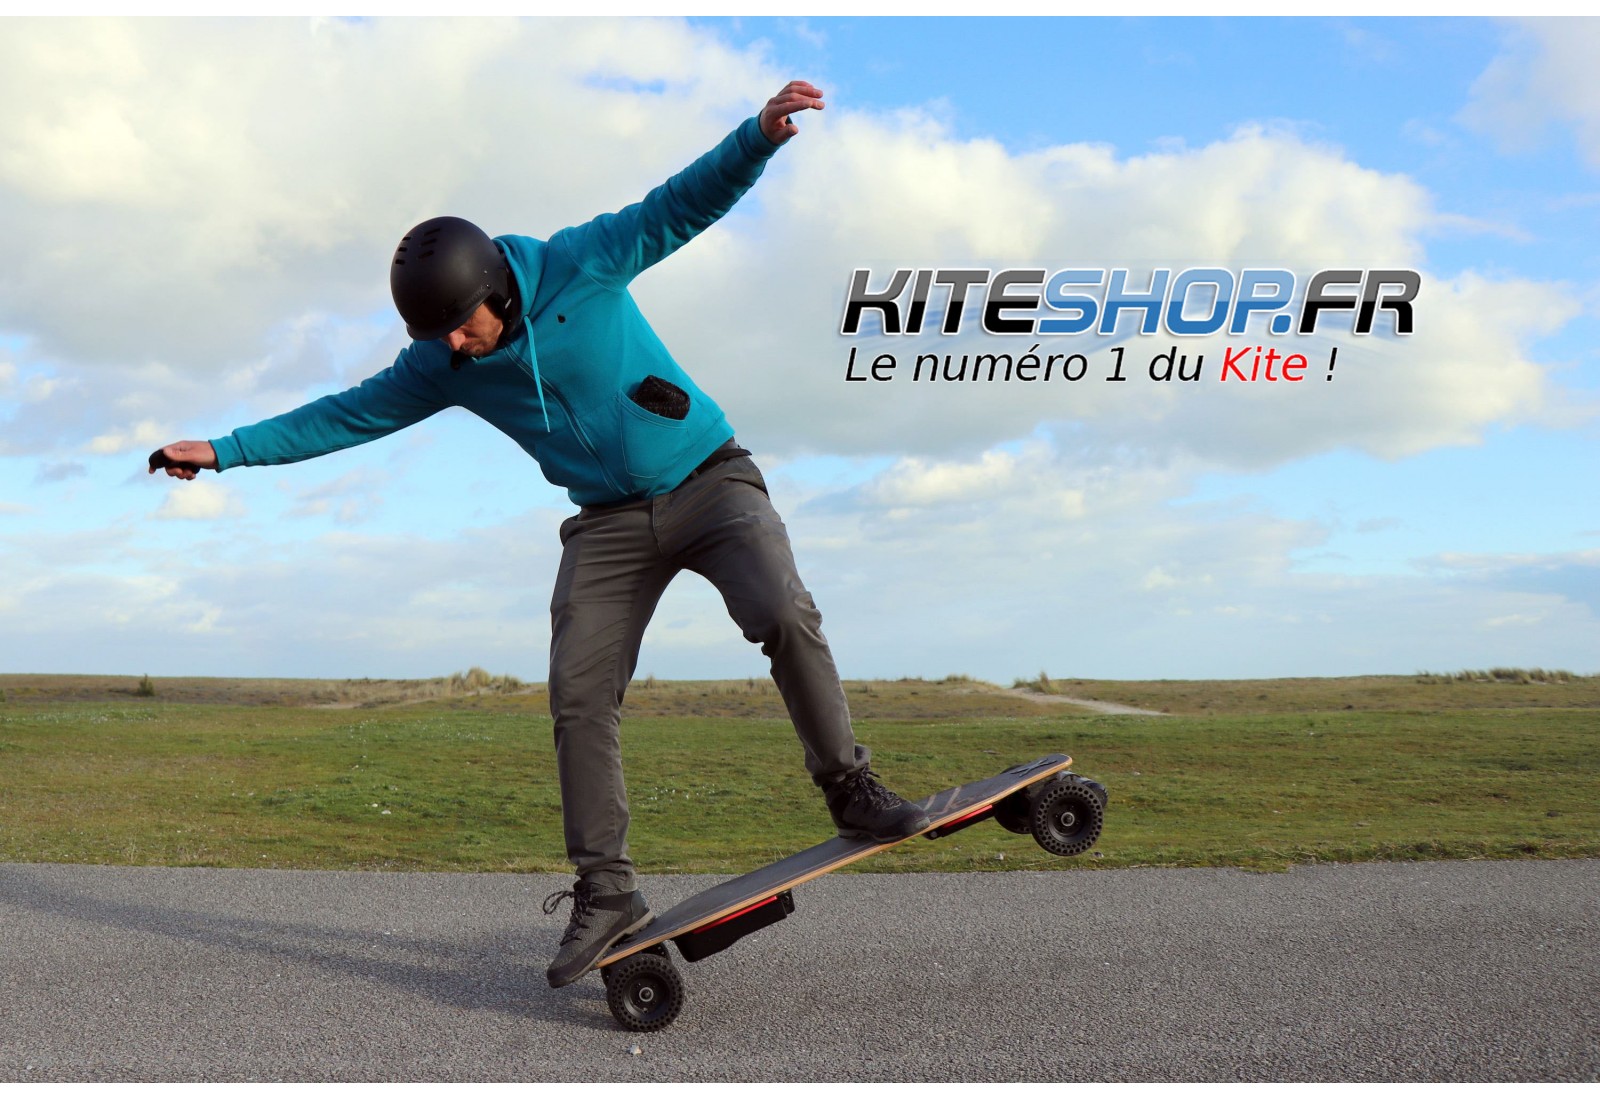 Skateboard électrique Switcher HP v2 - 11,6 Ah/ 14 Ah – PIE